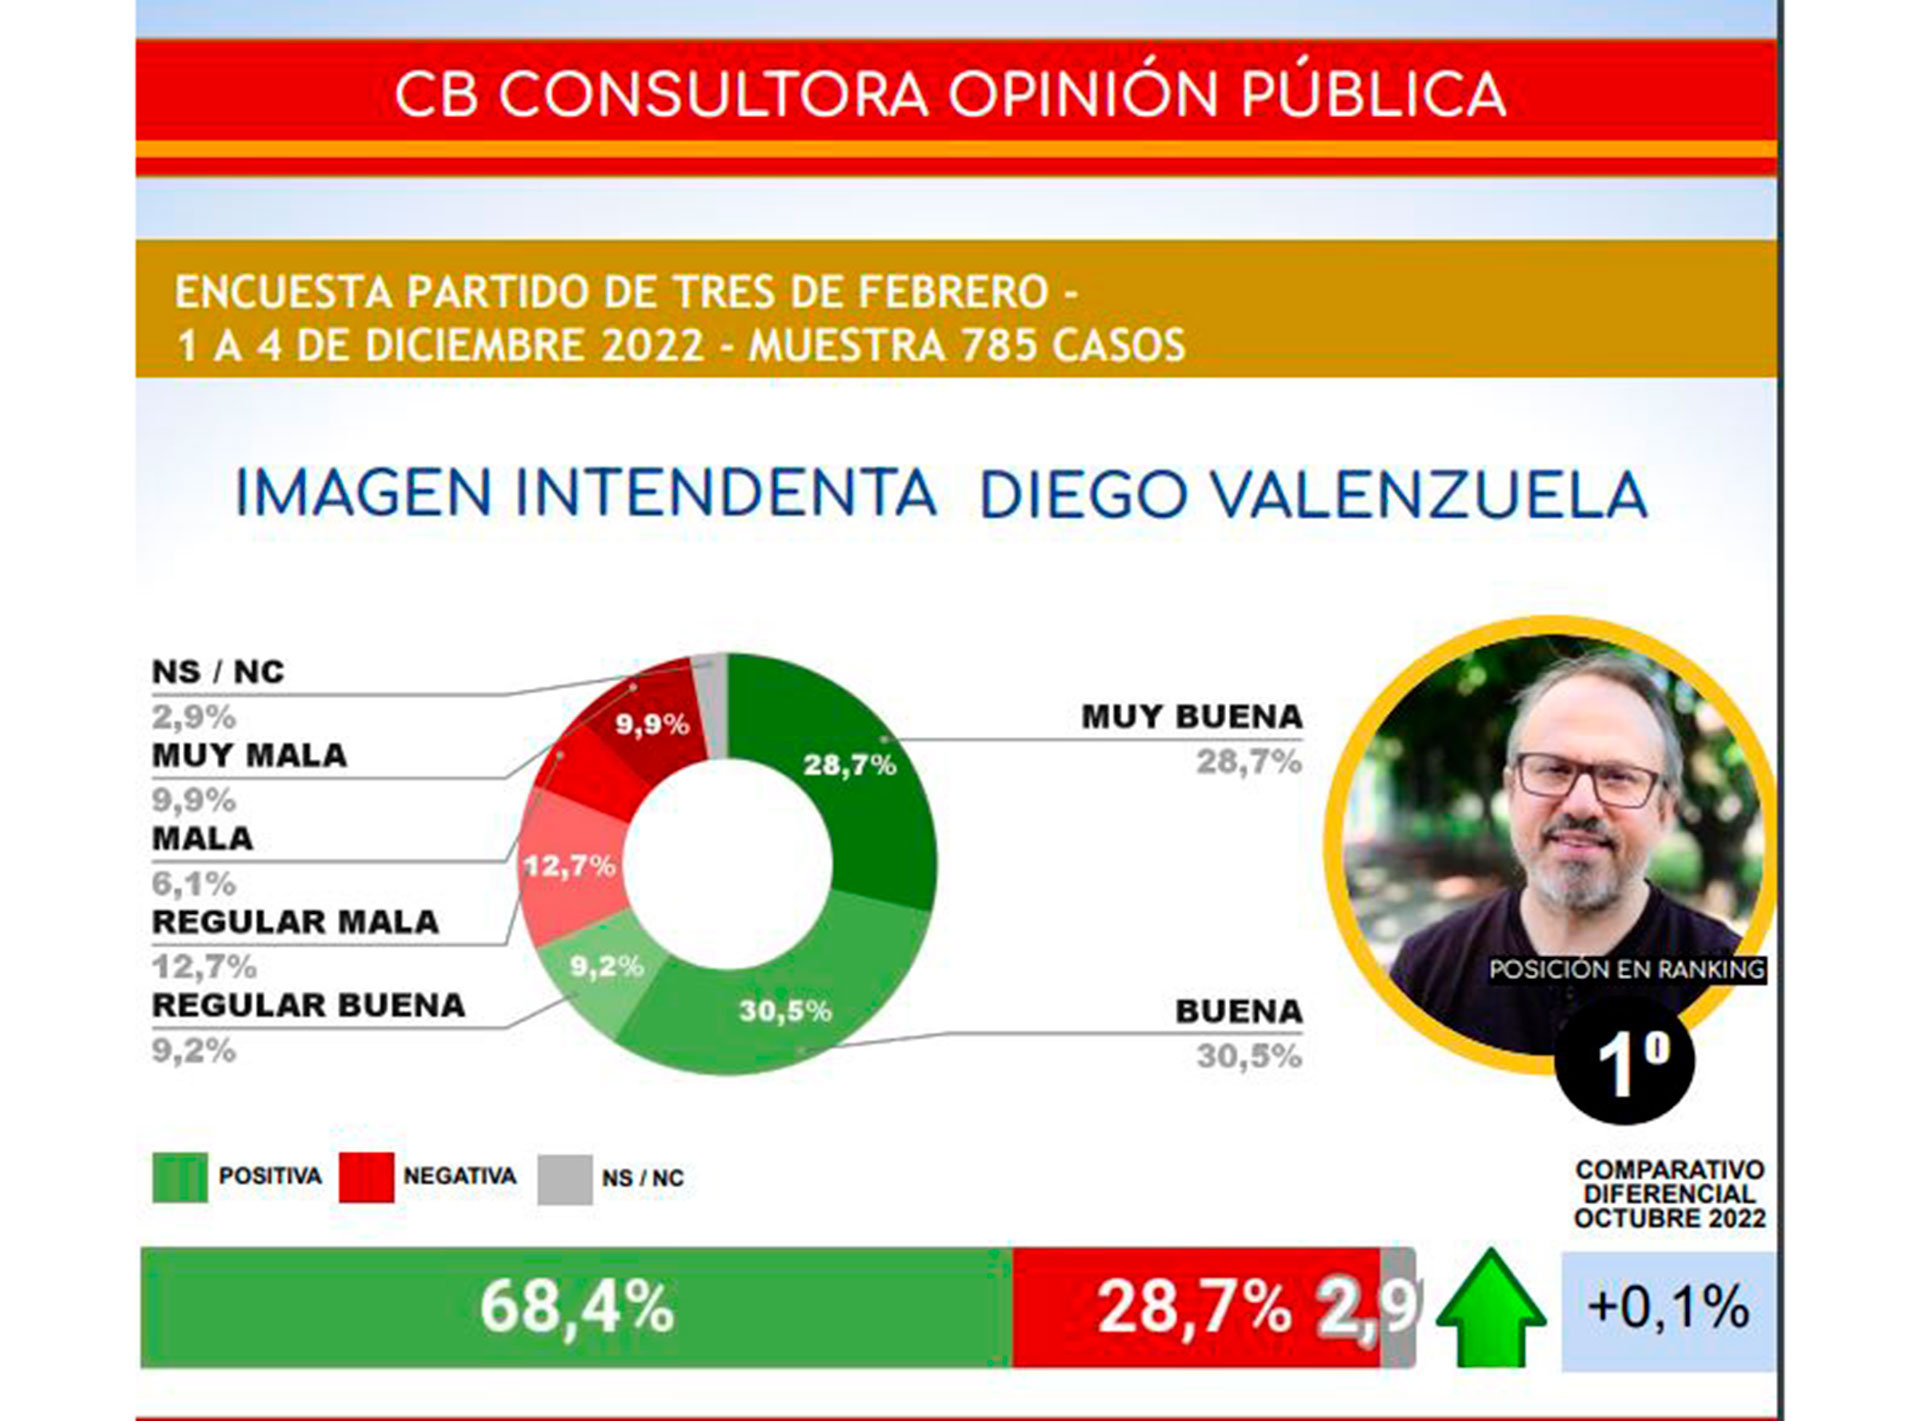 Diego Valenzuela lidera el ranking de imagen positiva entre los intendentes de los 24 principales municipios bonaerenses. (CB Consultora)